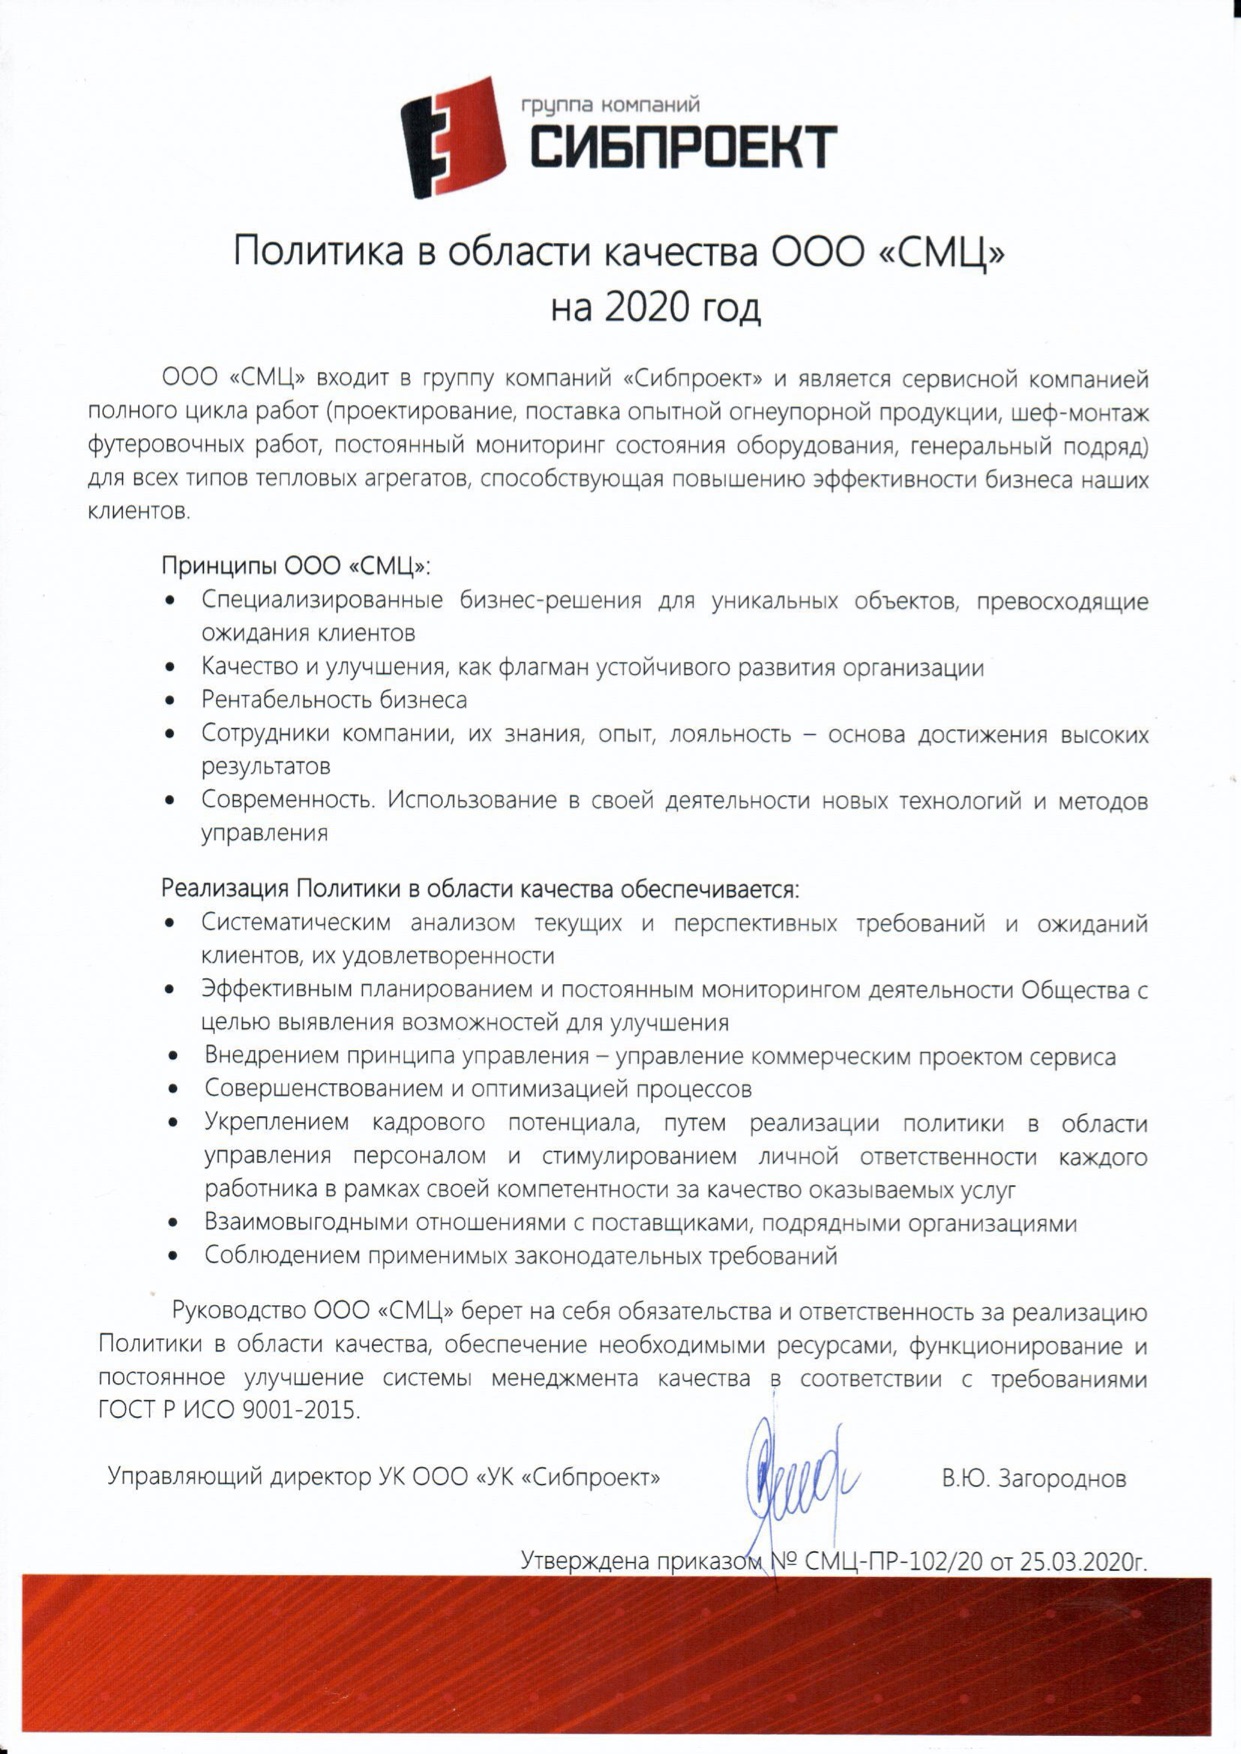 Политика ООО «СМЦ» в области качества 2020 г.